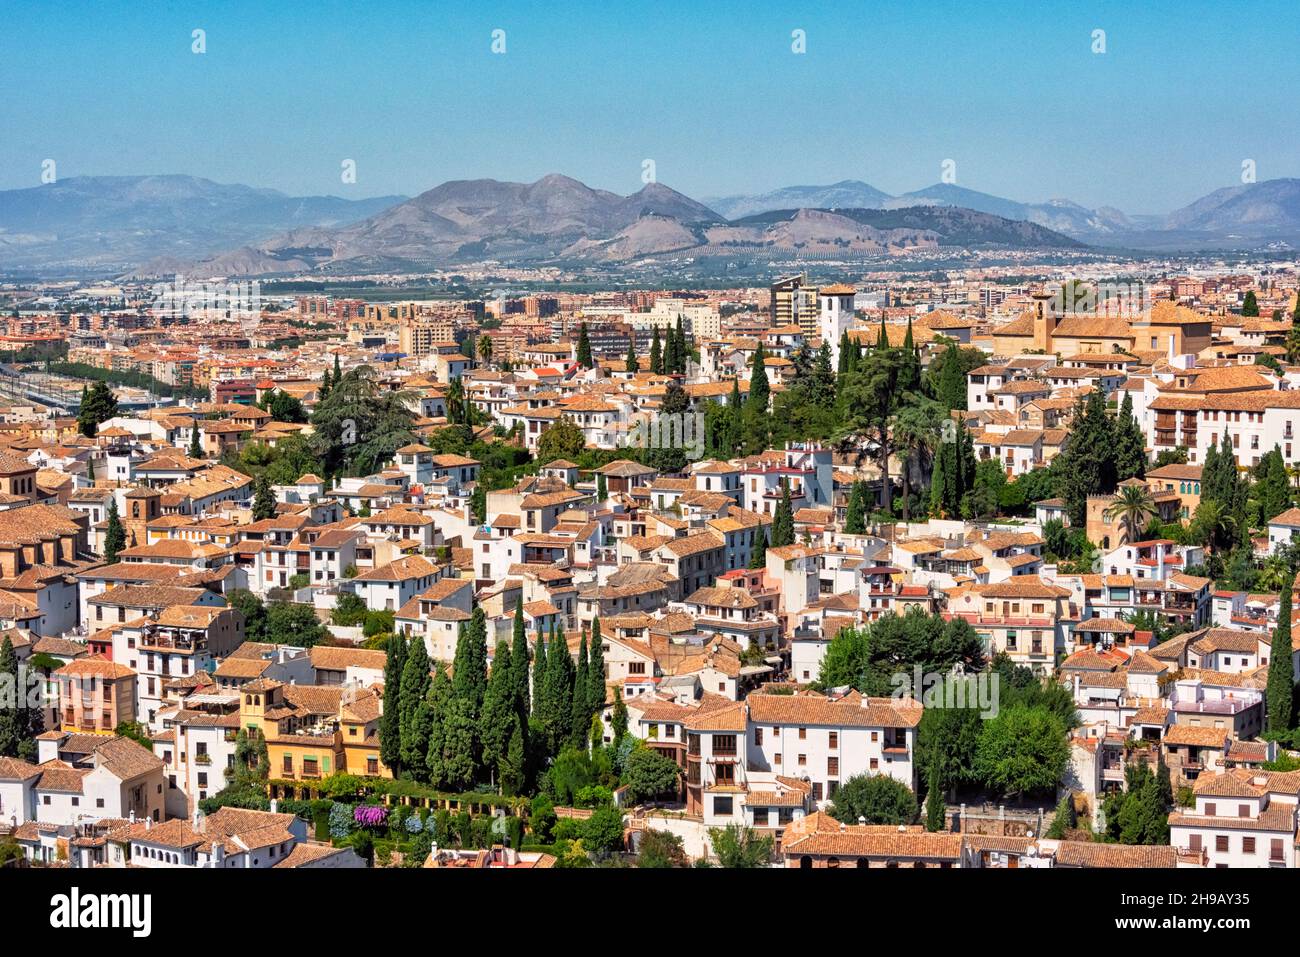 Granada cityscape, Granada, Granada Province, Andalusia Autonomous Community, Spain Stock Photo